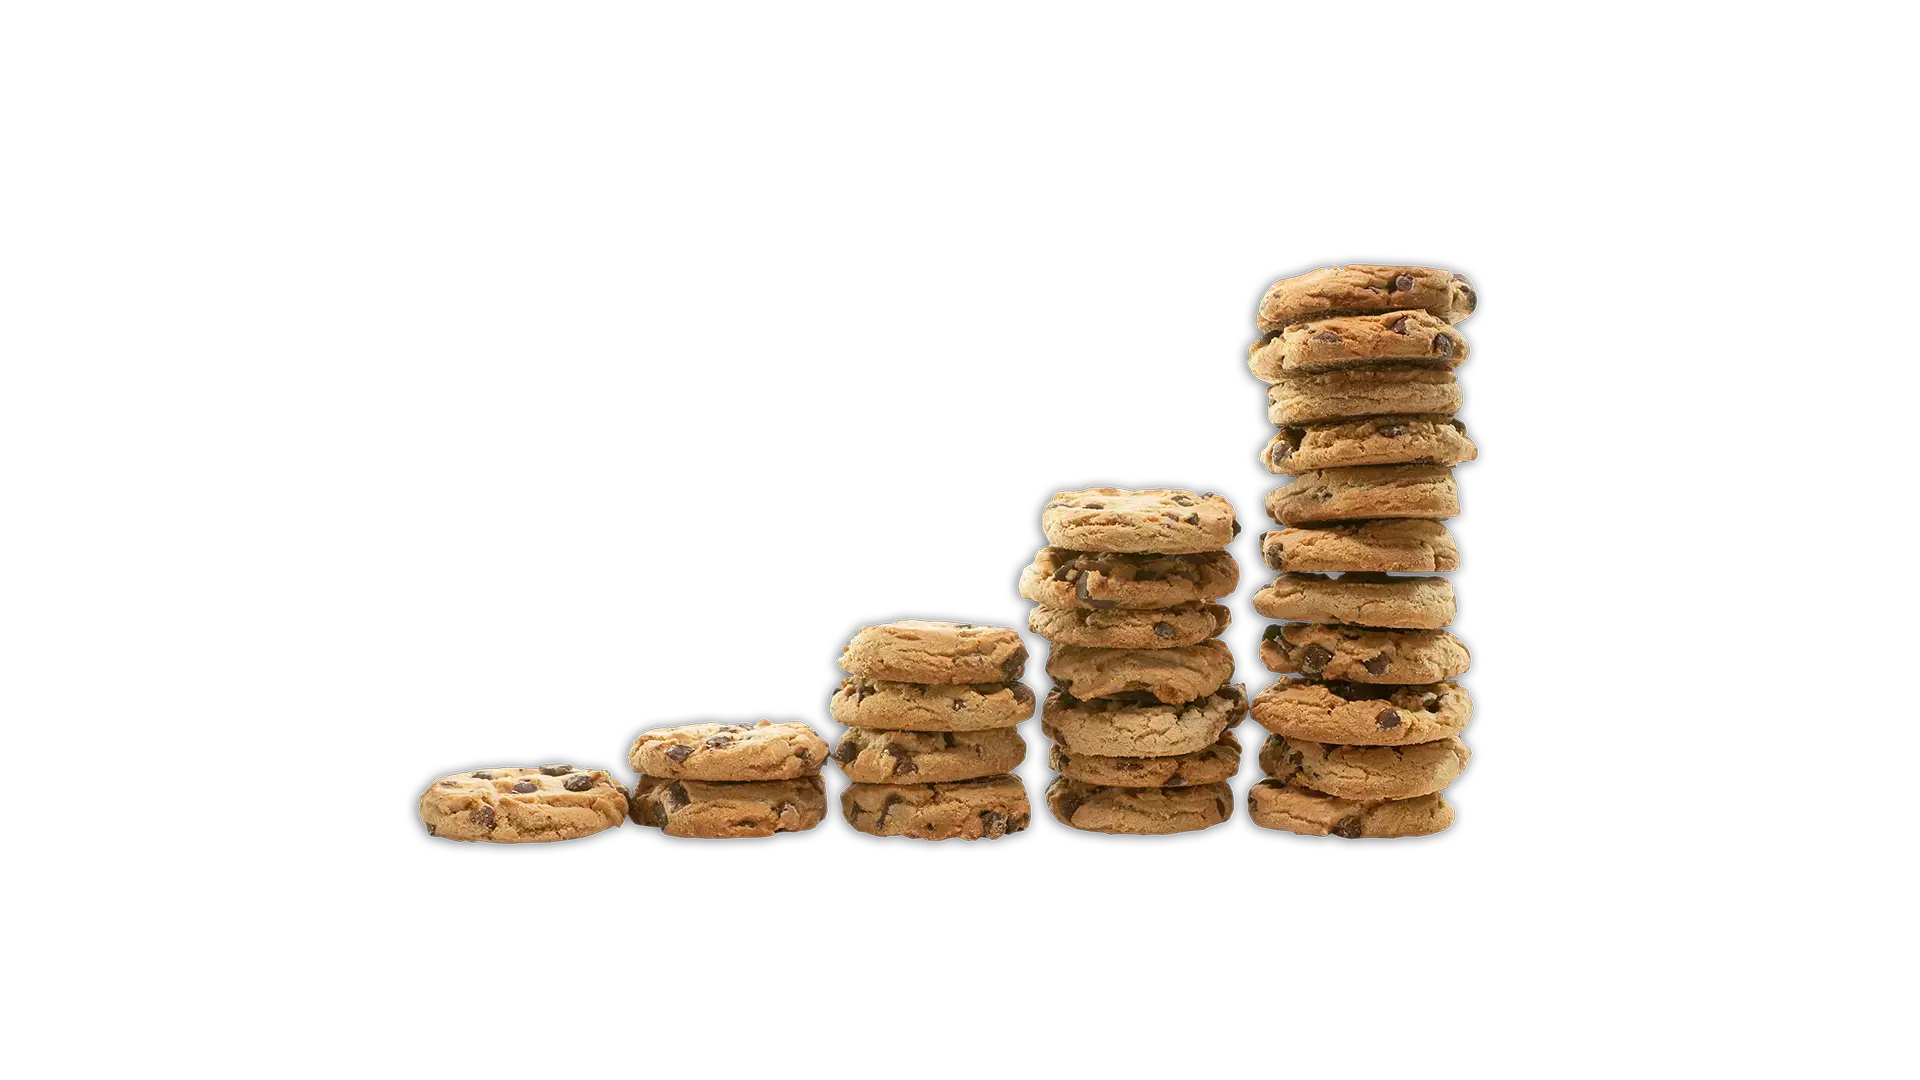 Various stacks of cookies